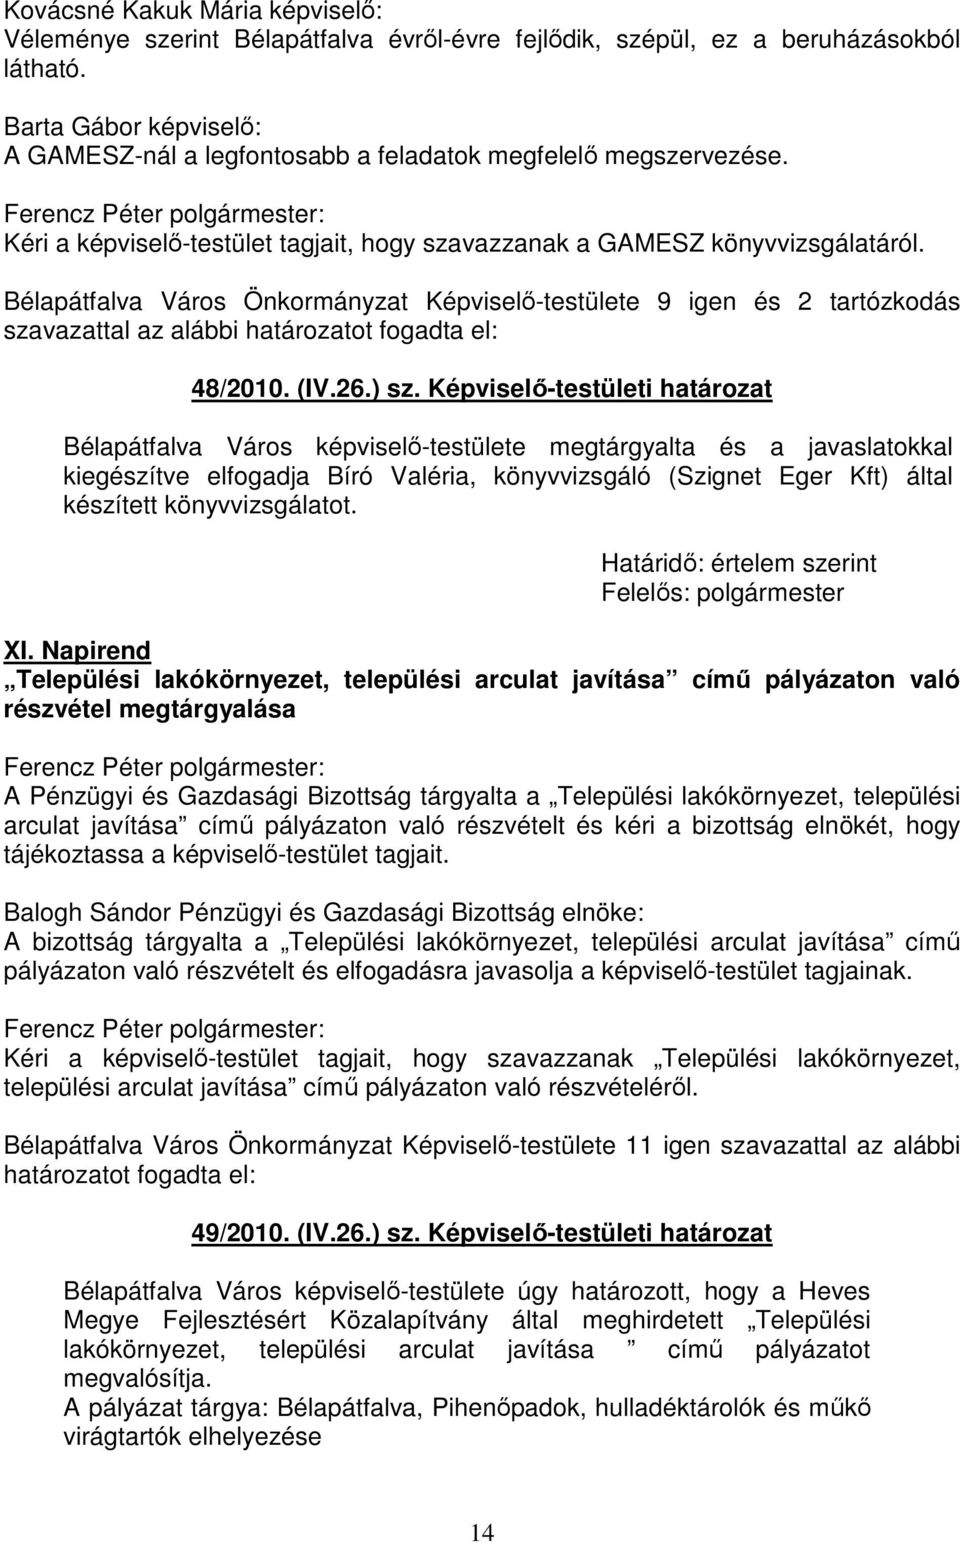 Bélapátfalva Város Önkormányzat Képviselő-testülete 9 igen és 2 tartózkodás szavazattal az alábbi 48/2010. (IV.26.) sz.